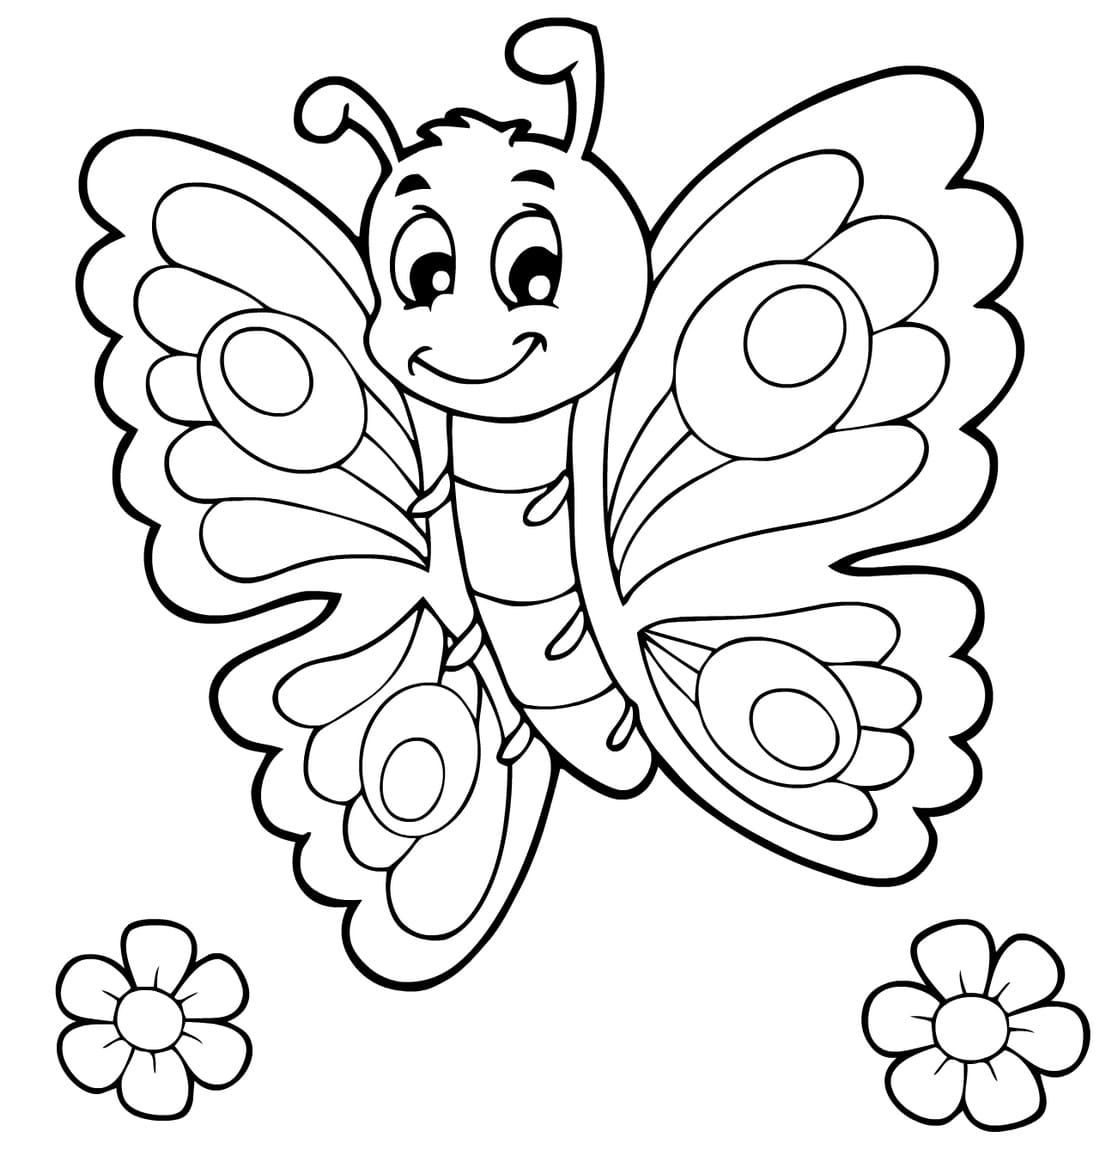 ausmalbilderkinder.de - Ausmalbilder Schmetterling 10